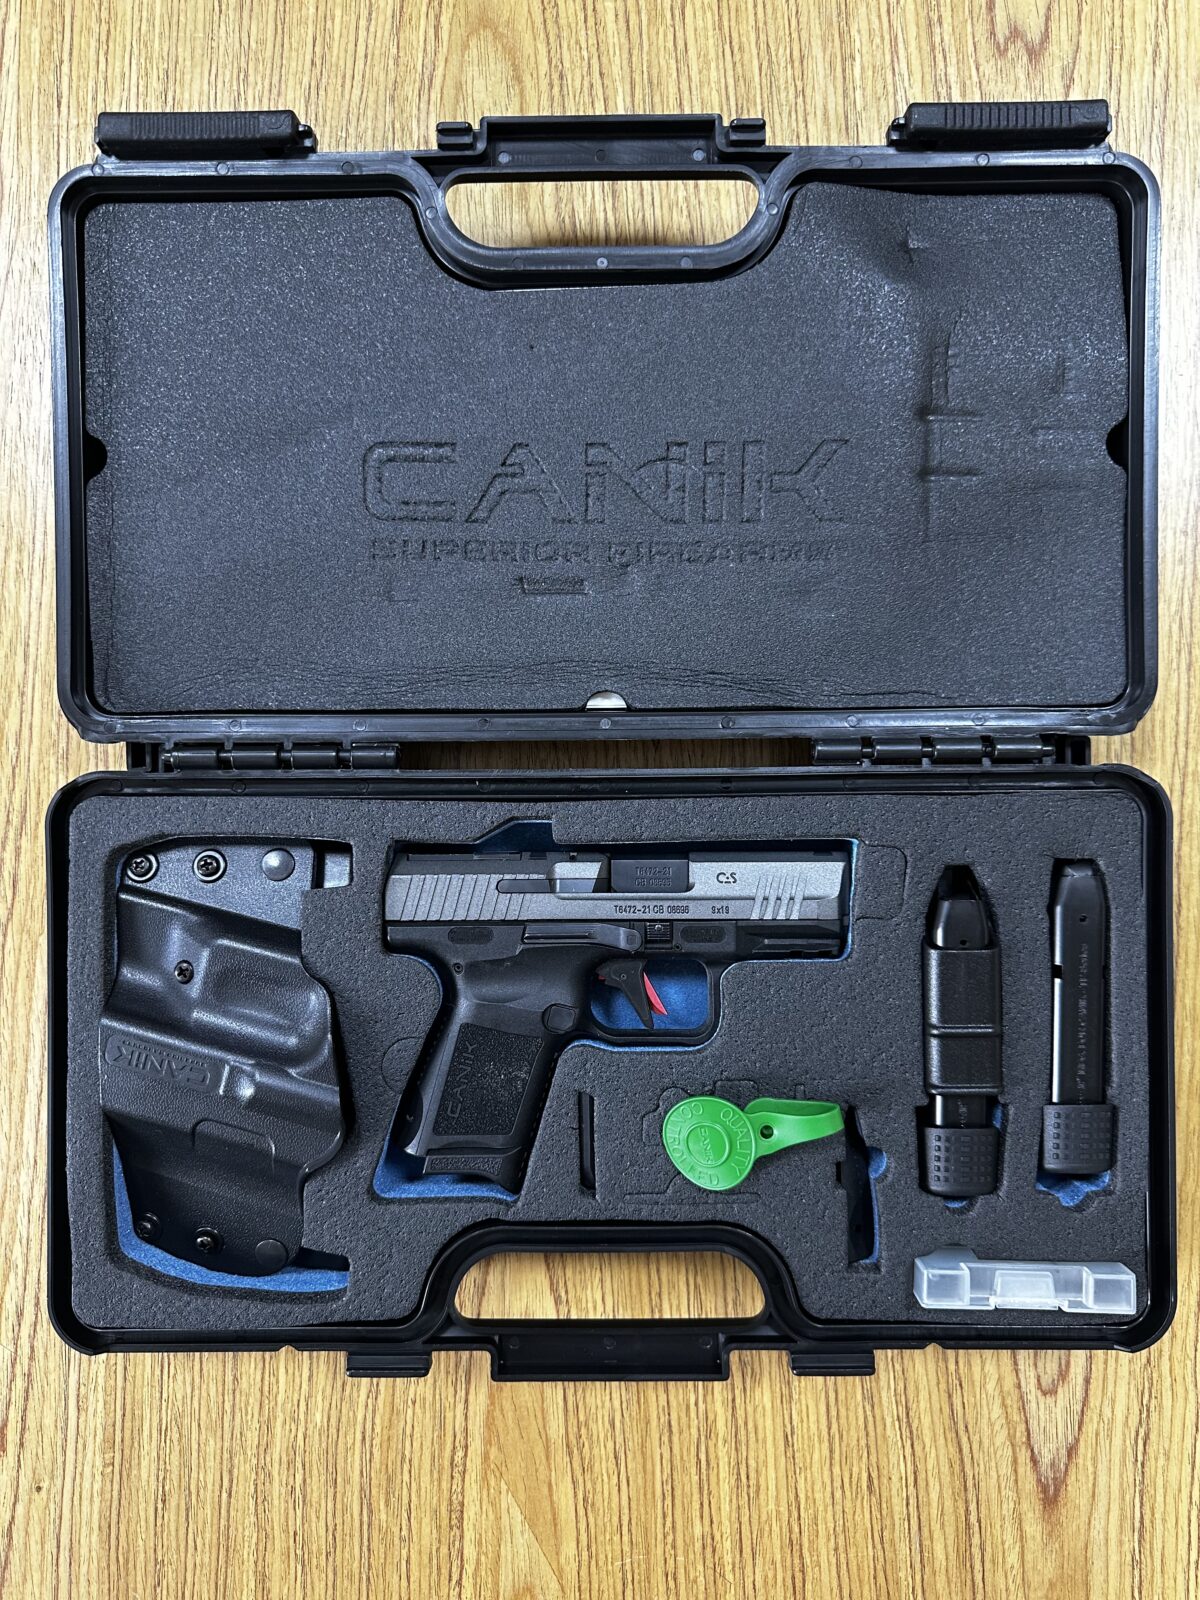 Canik Tp9 Sub Elite Cas Tungsten